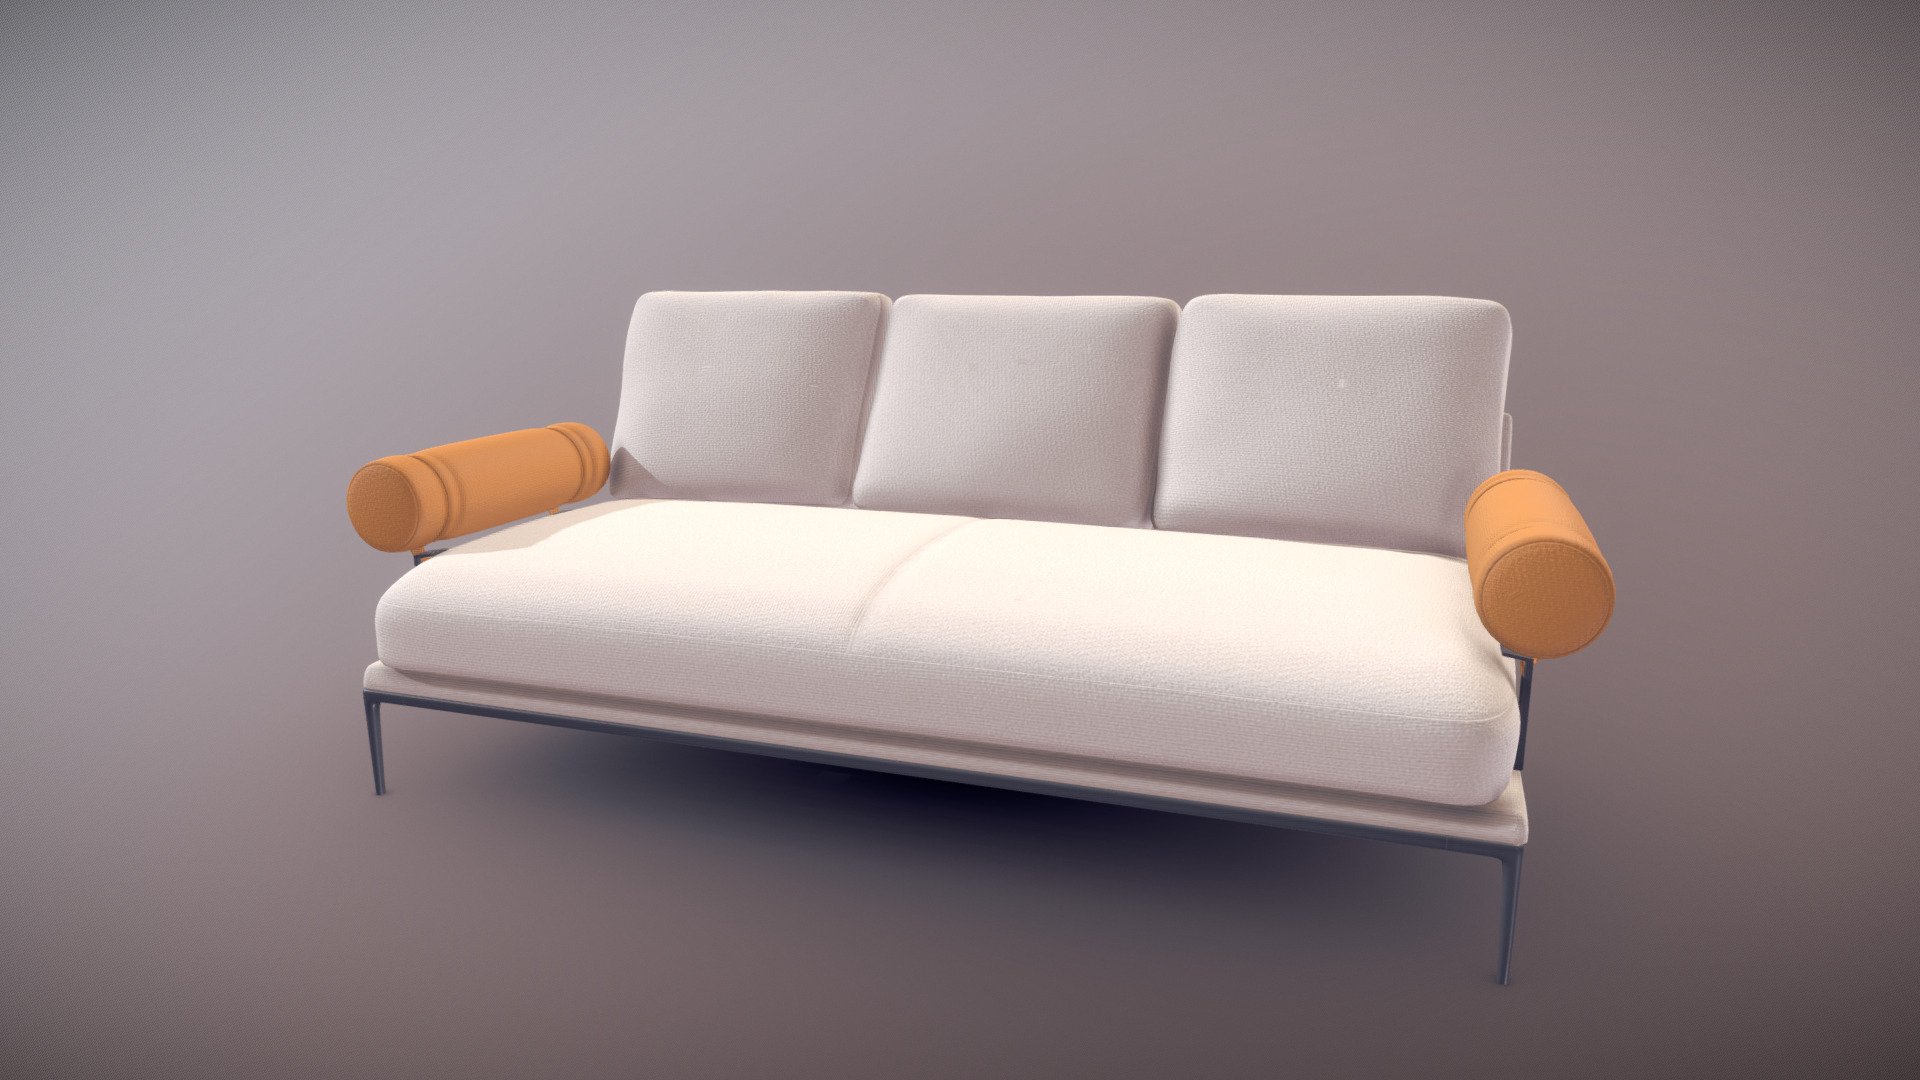 Sofa for archviz
Blender and Substance - BNB Atoll Soft Sofa - 3D model by mizrette 3d model